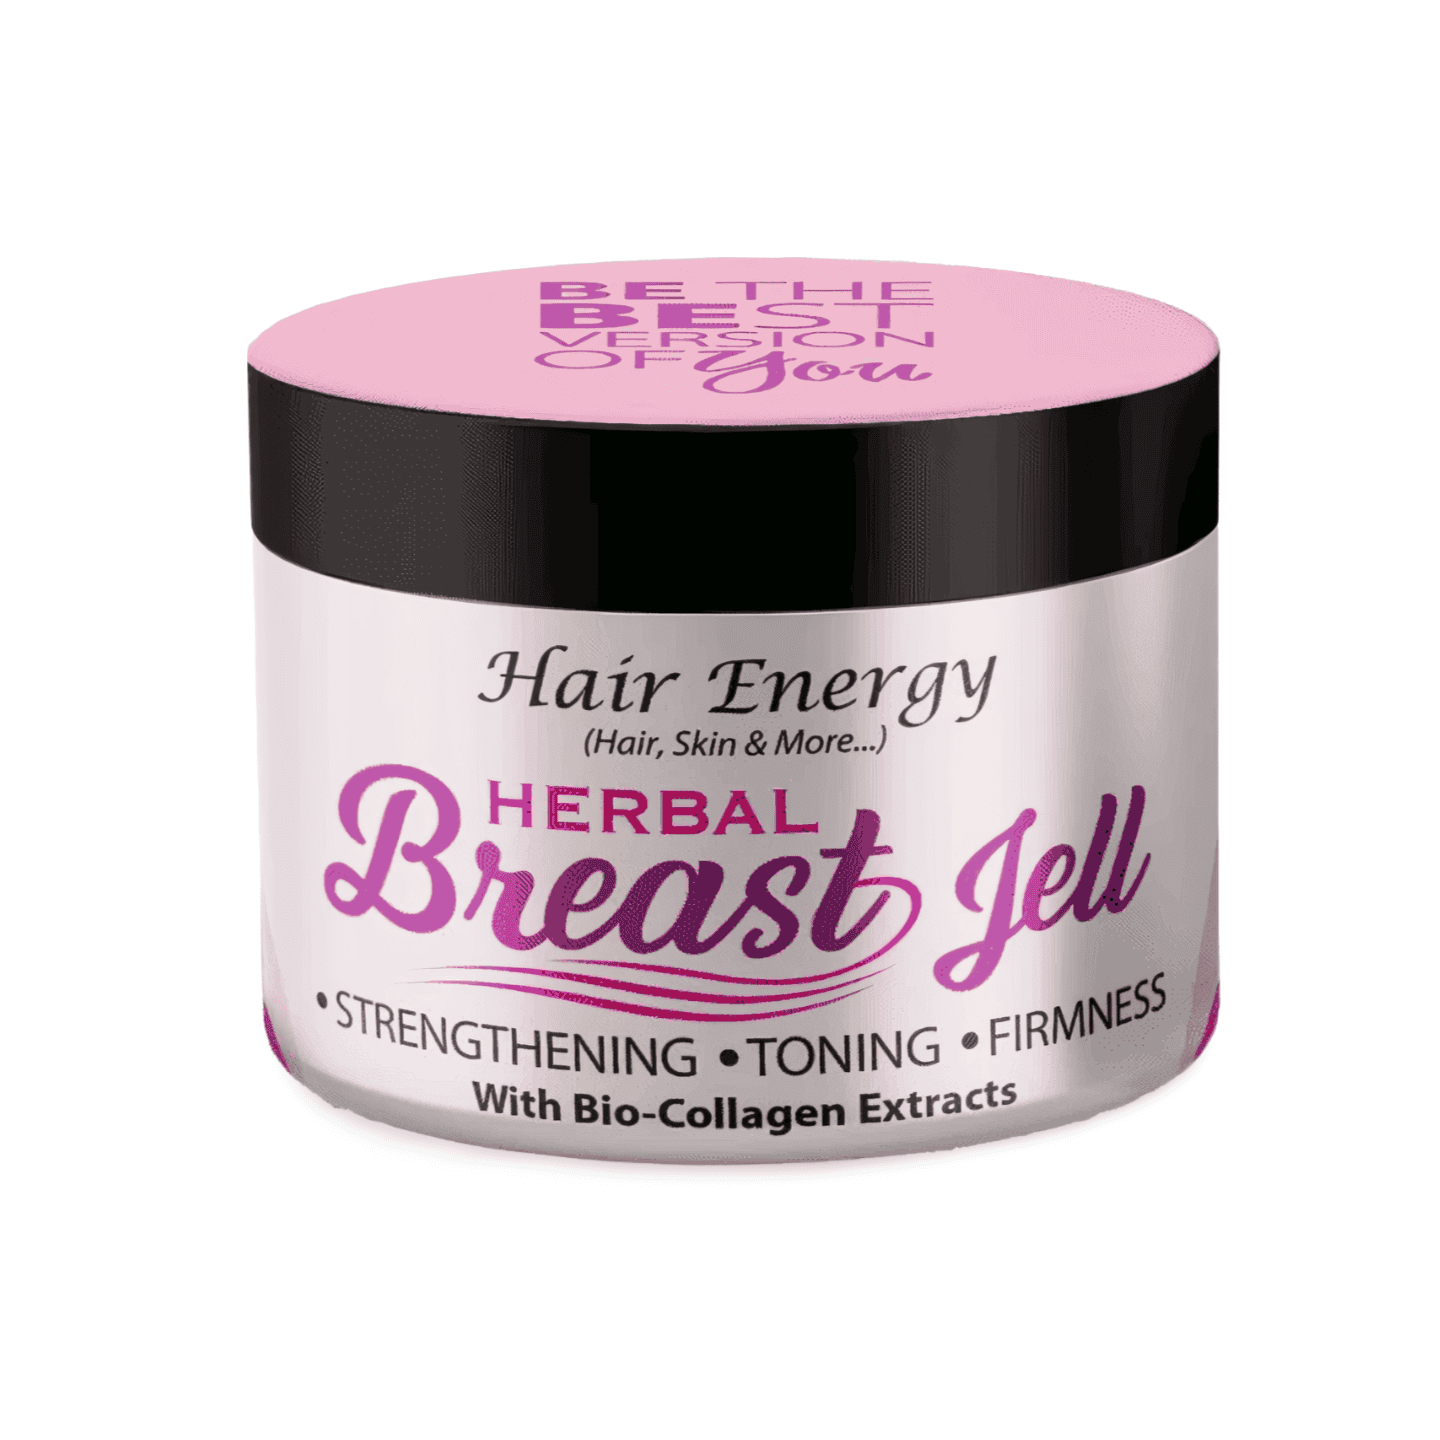 Hair Energy Herbal Breast Jell